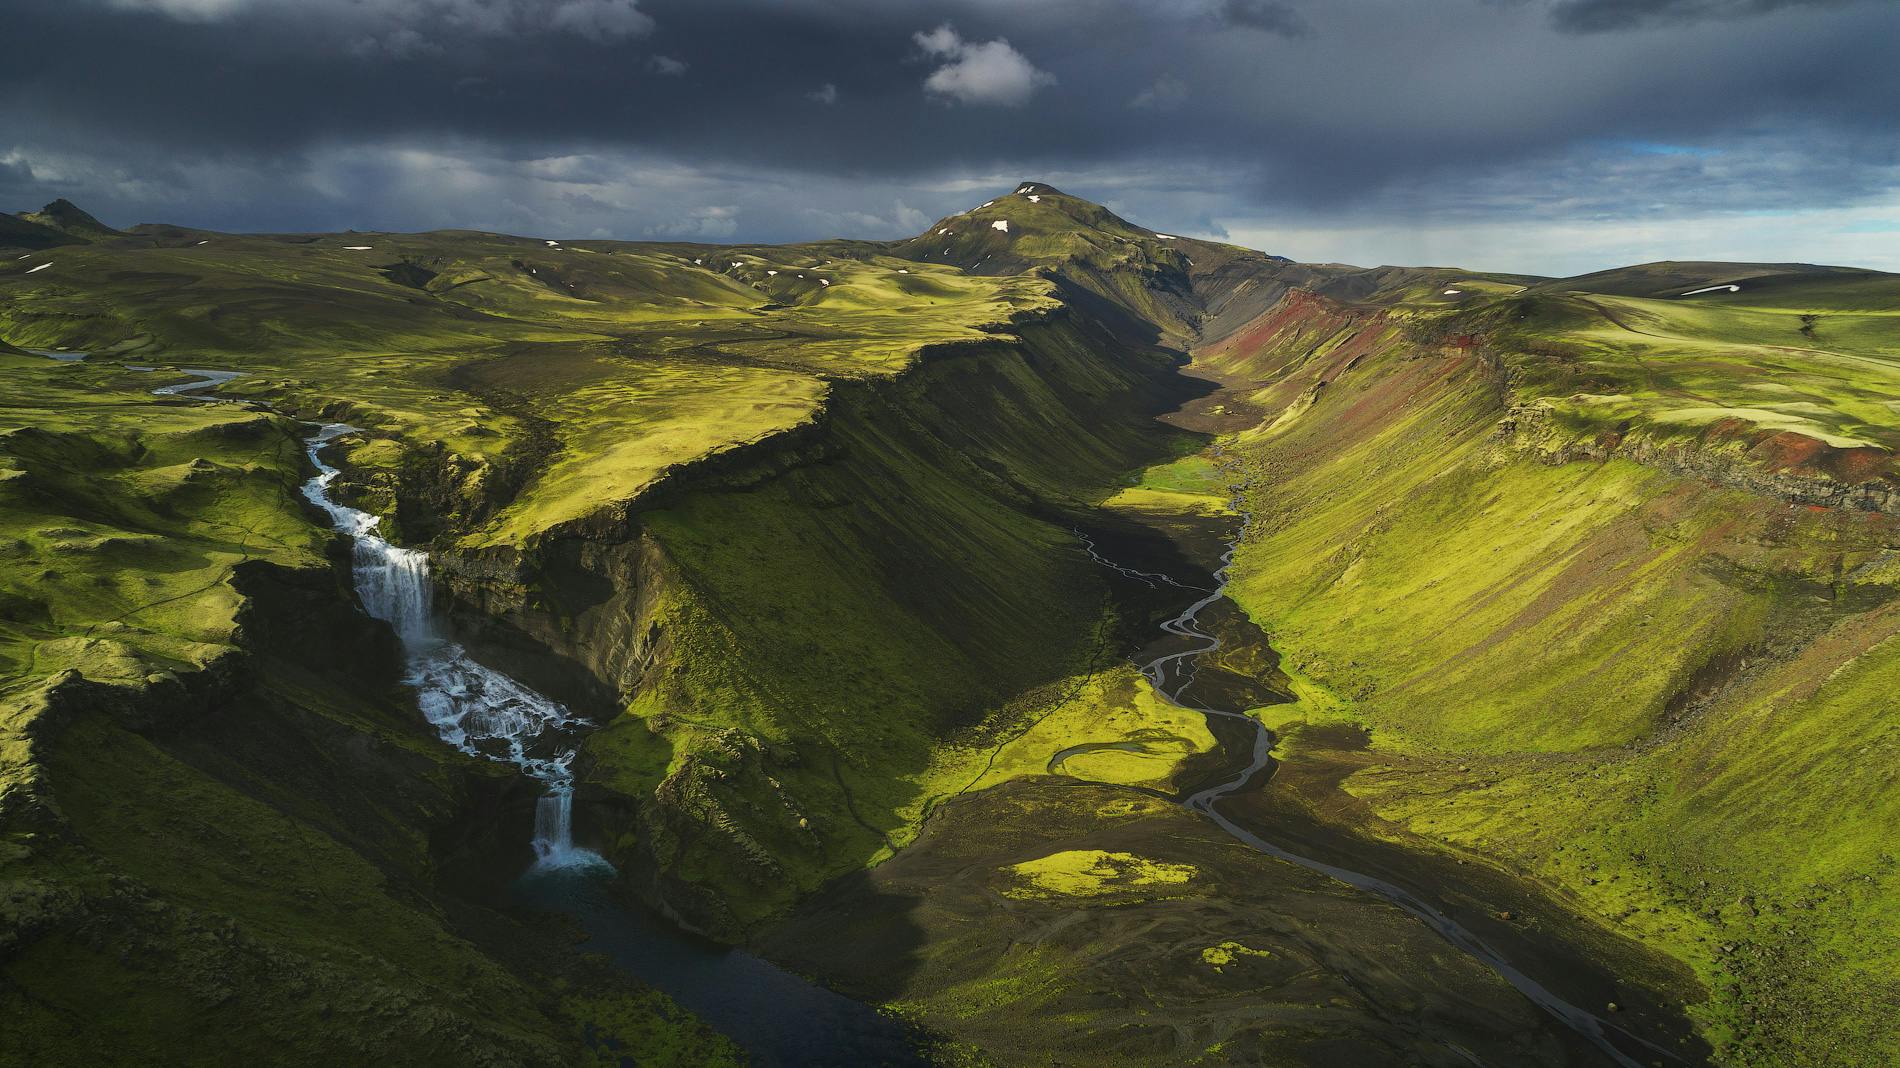 โธรเมิร์กเป็นทุ่งที่สวยงามและได้รับความนิยมมากที่สุดในไฮแลนด์ประเทศไอซ์แลนด์